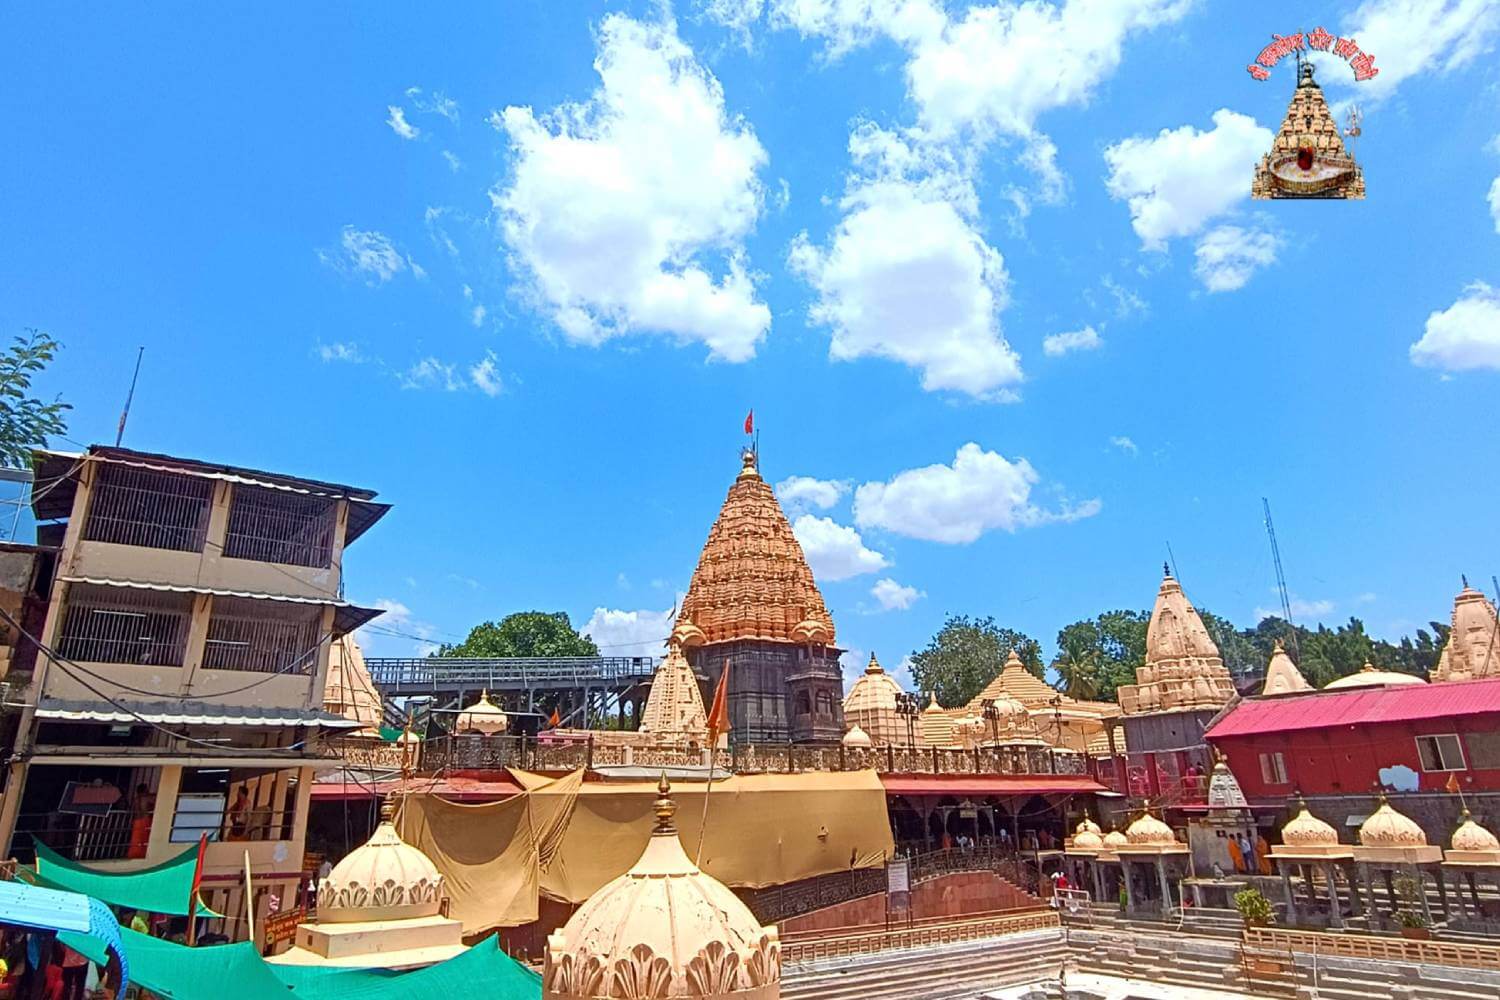 Ujjain Mahakal Temple